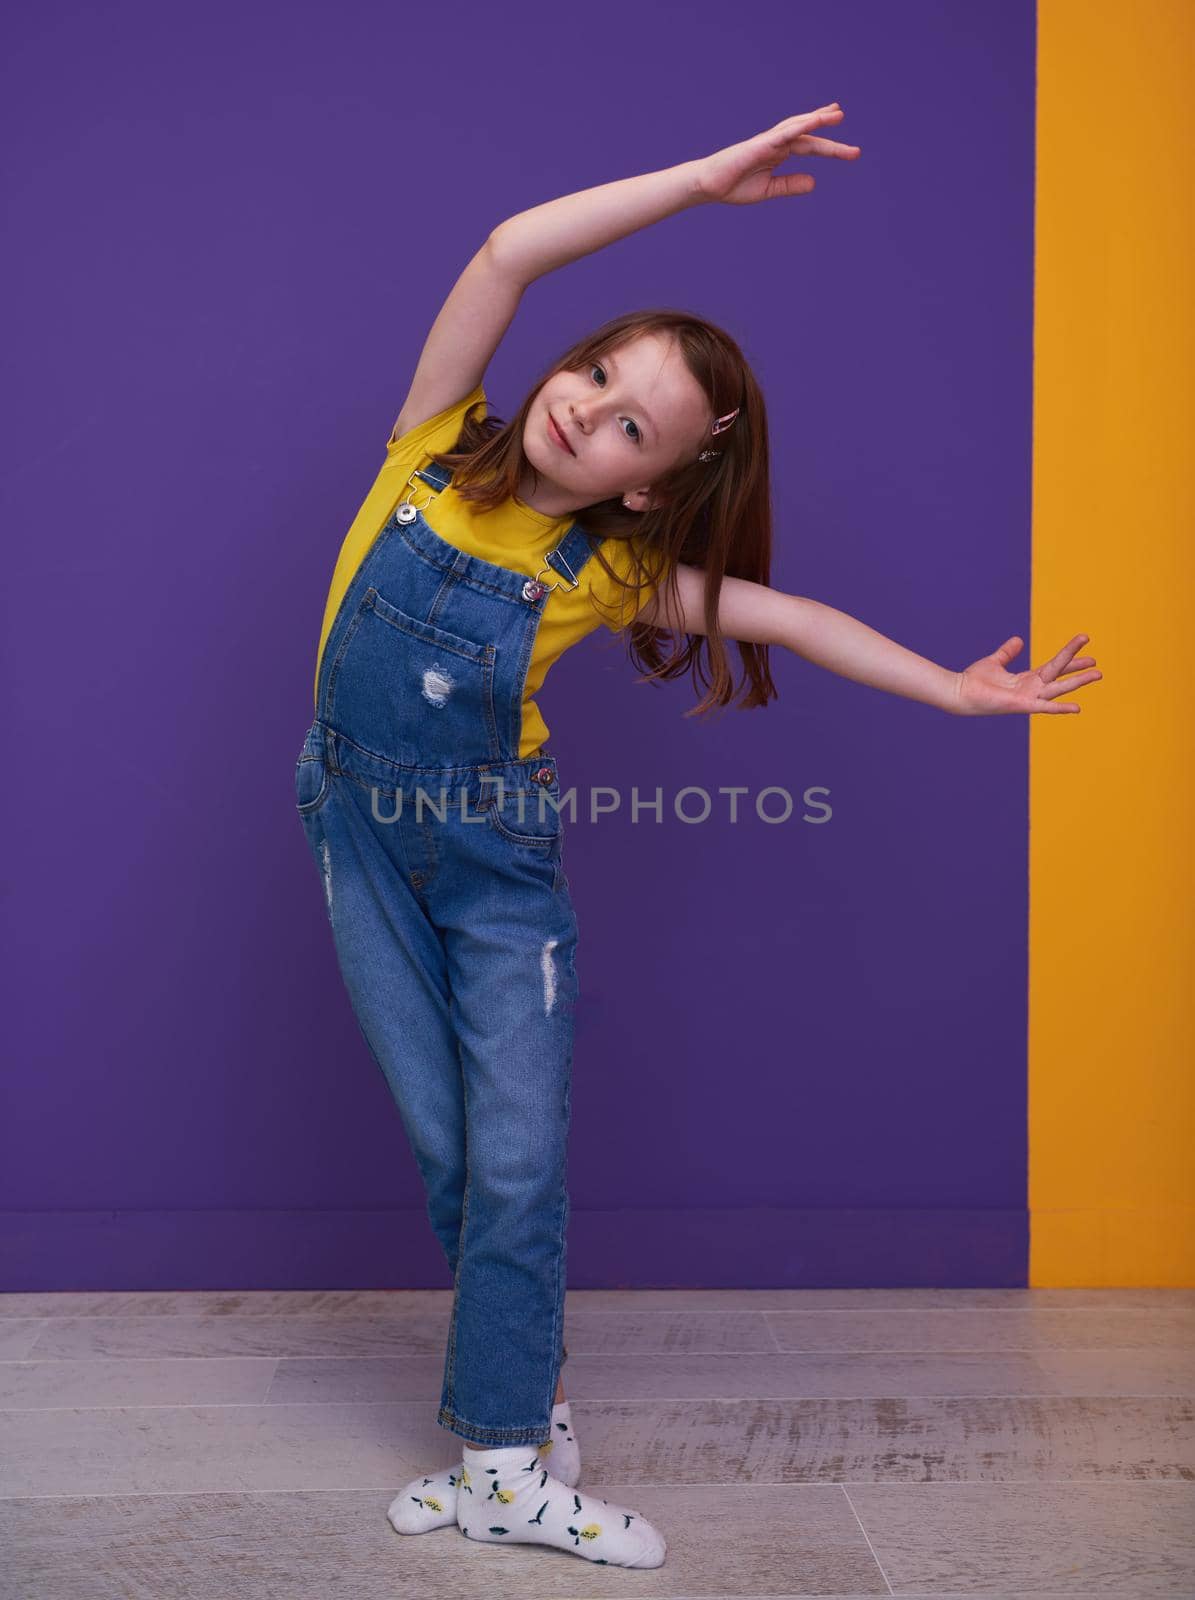 Cute little girl dancing ballet at home